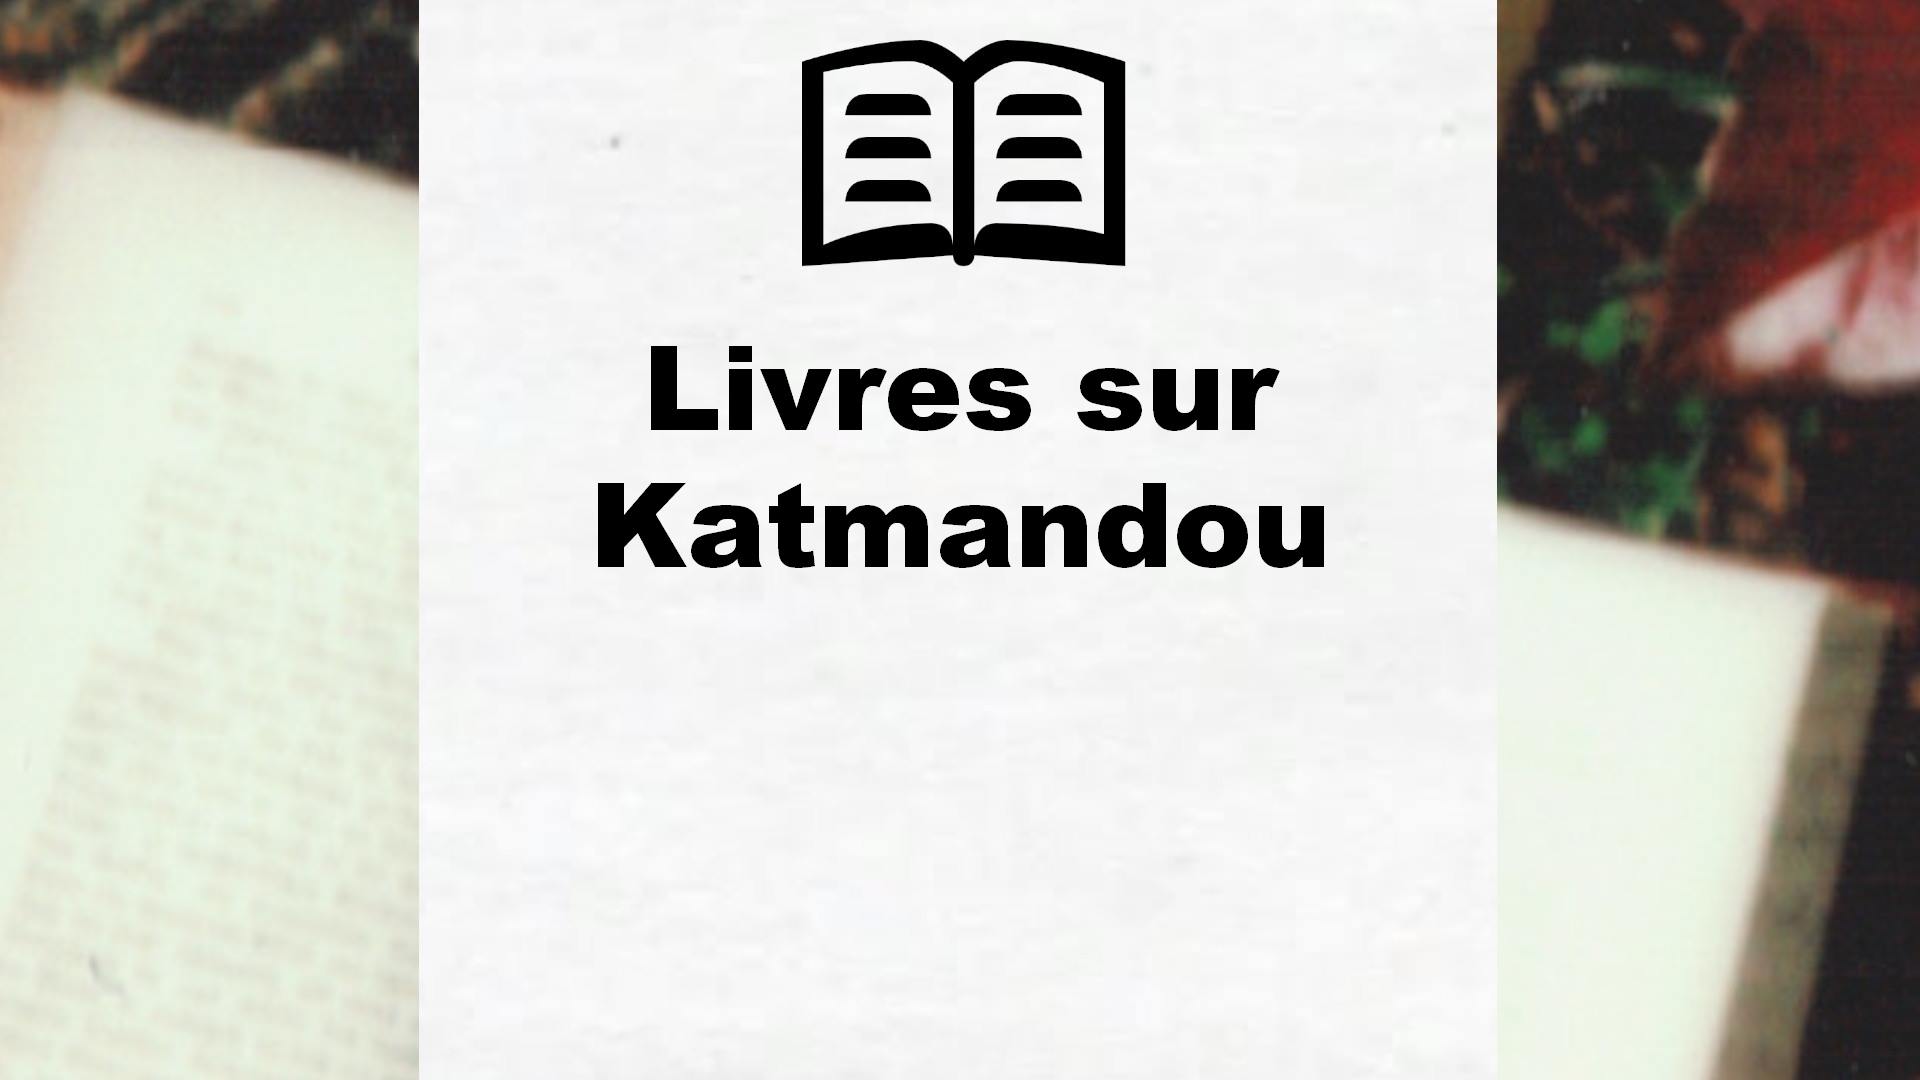 Livres sur Katmandou